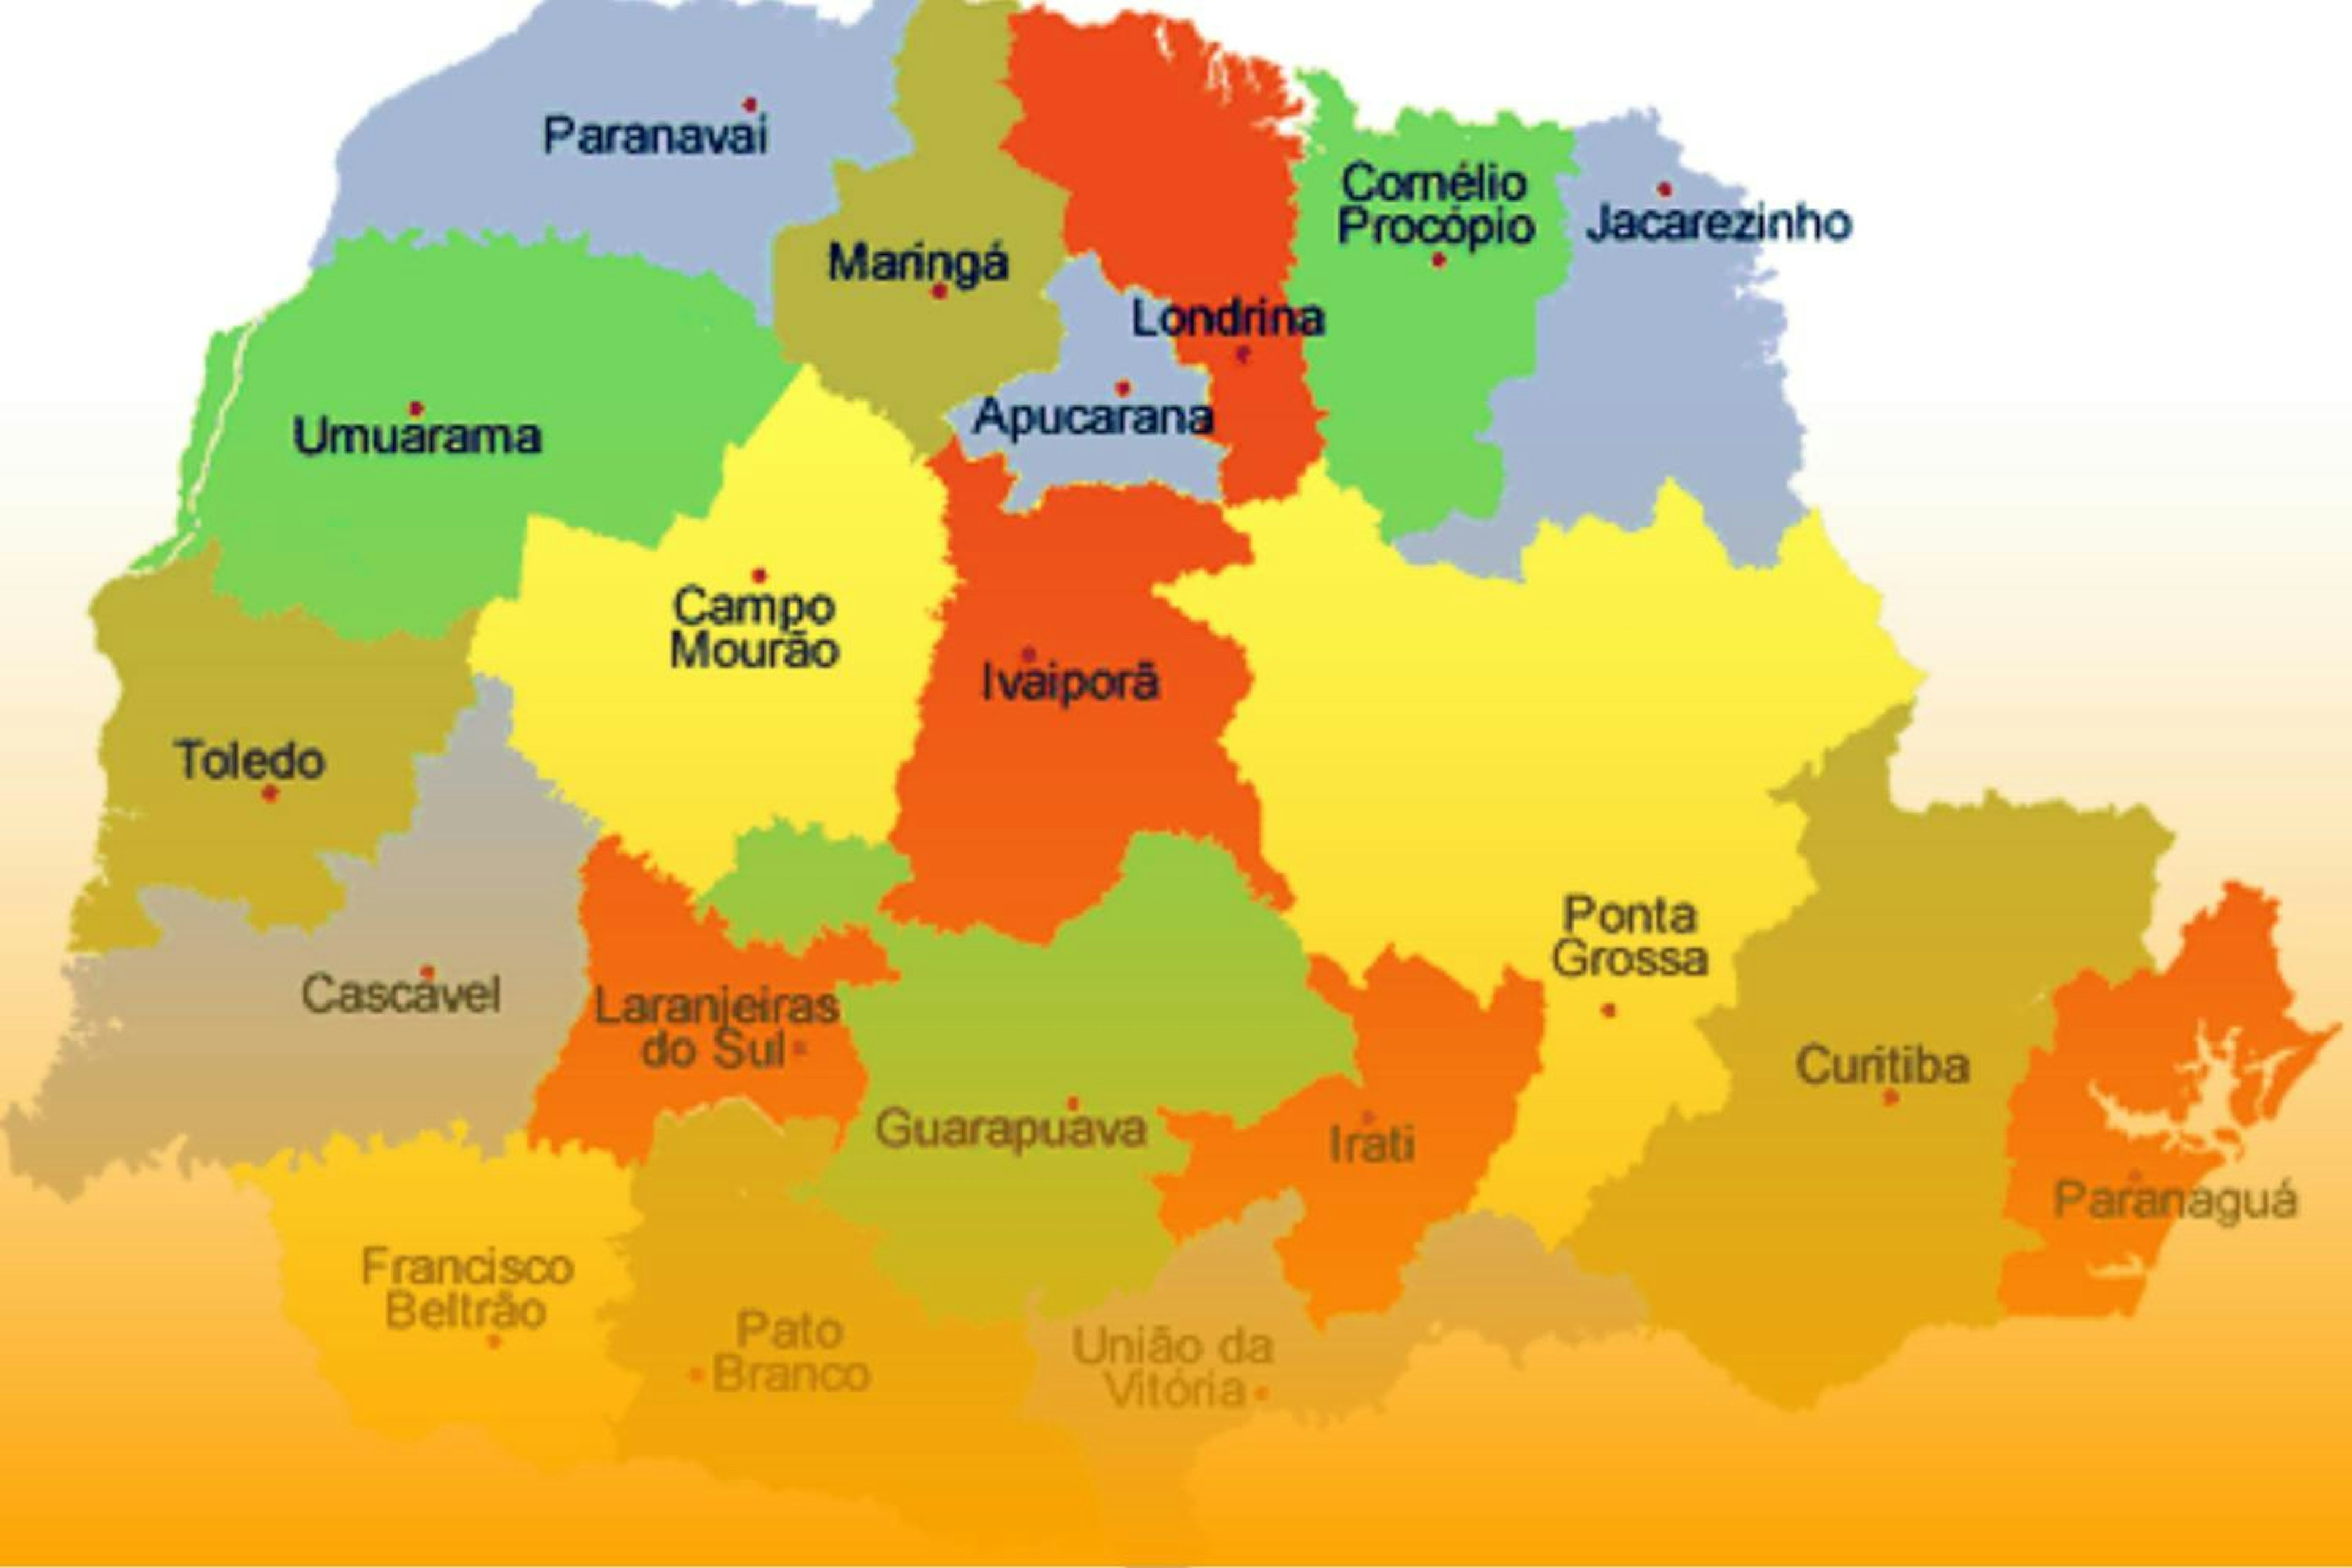 Mapa do estado do Paraná